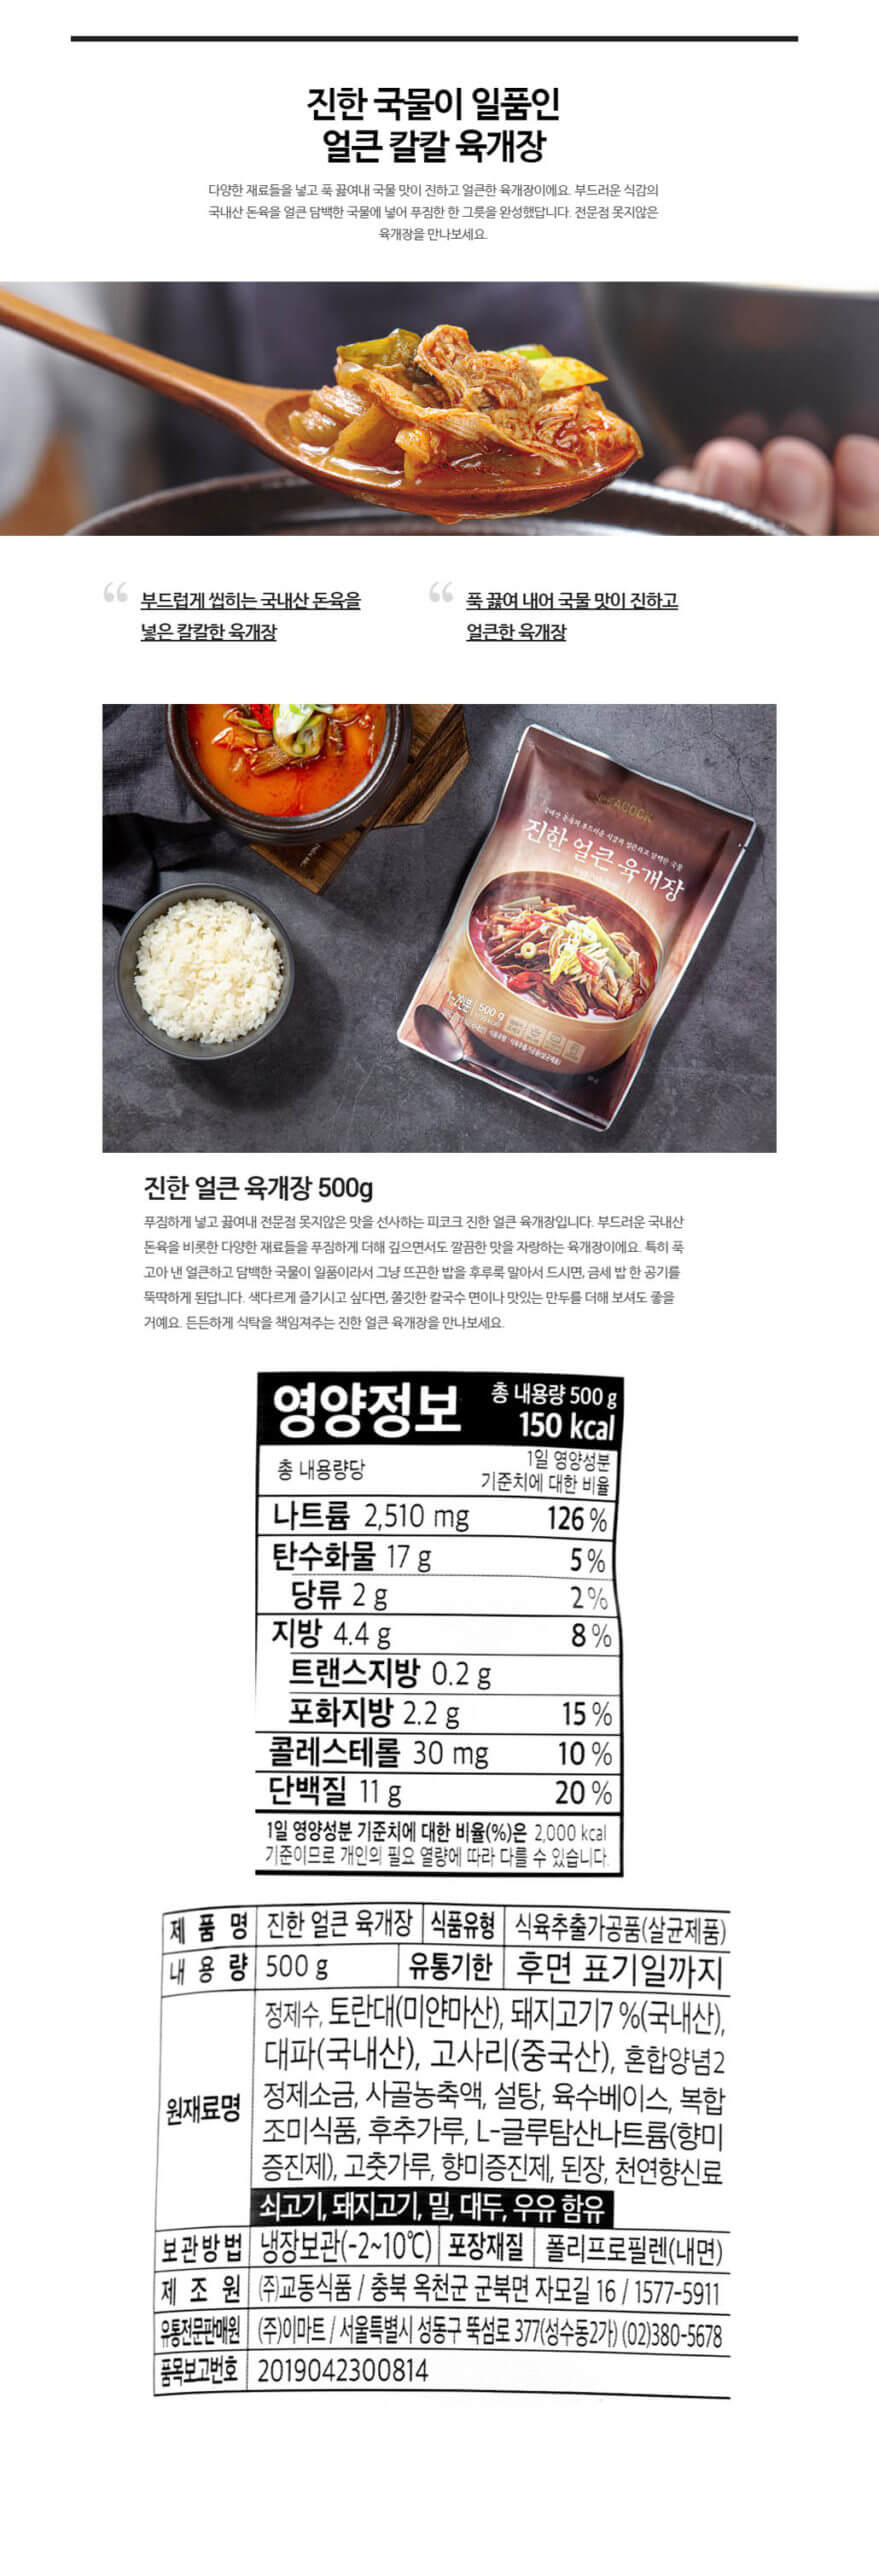 韓國食品-[Peacock] 辣豬肉湯 500g